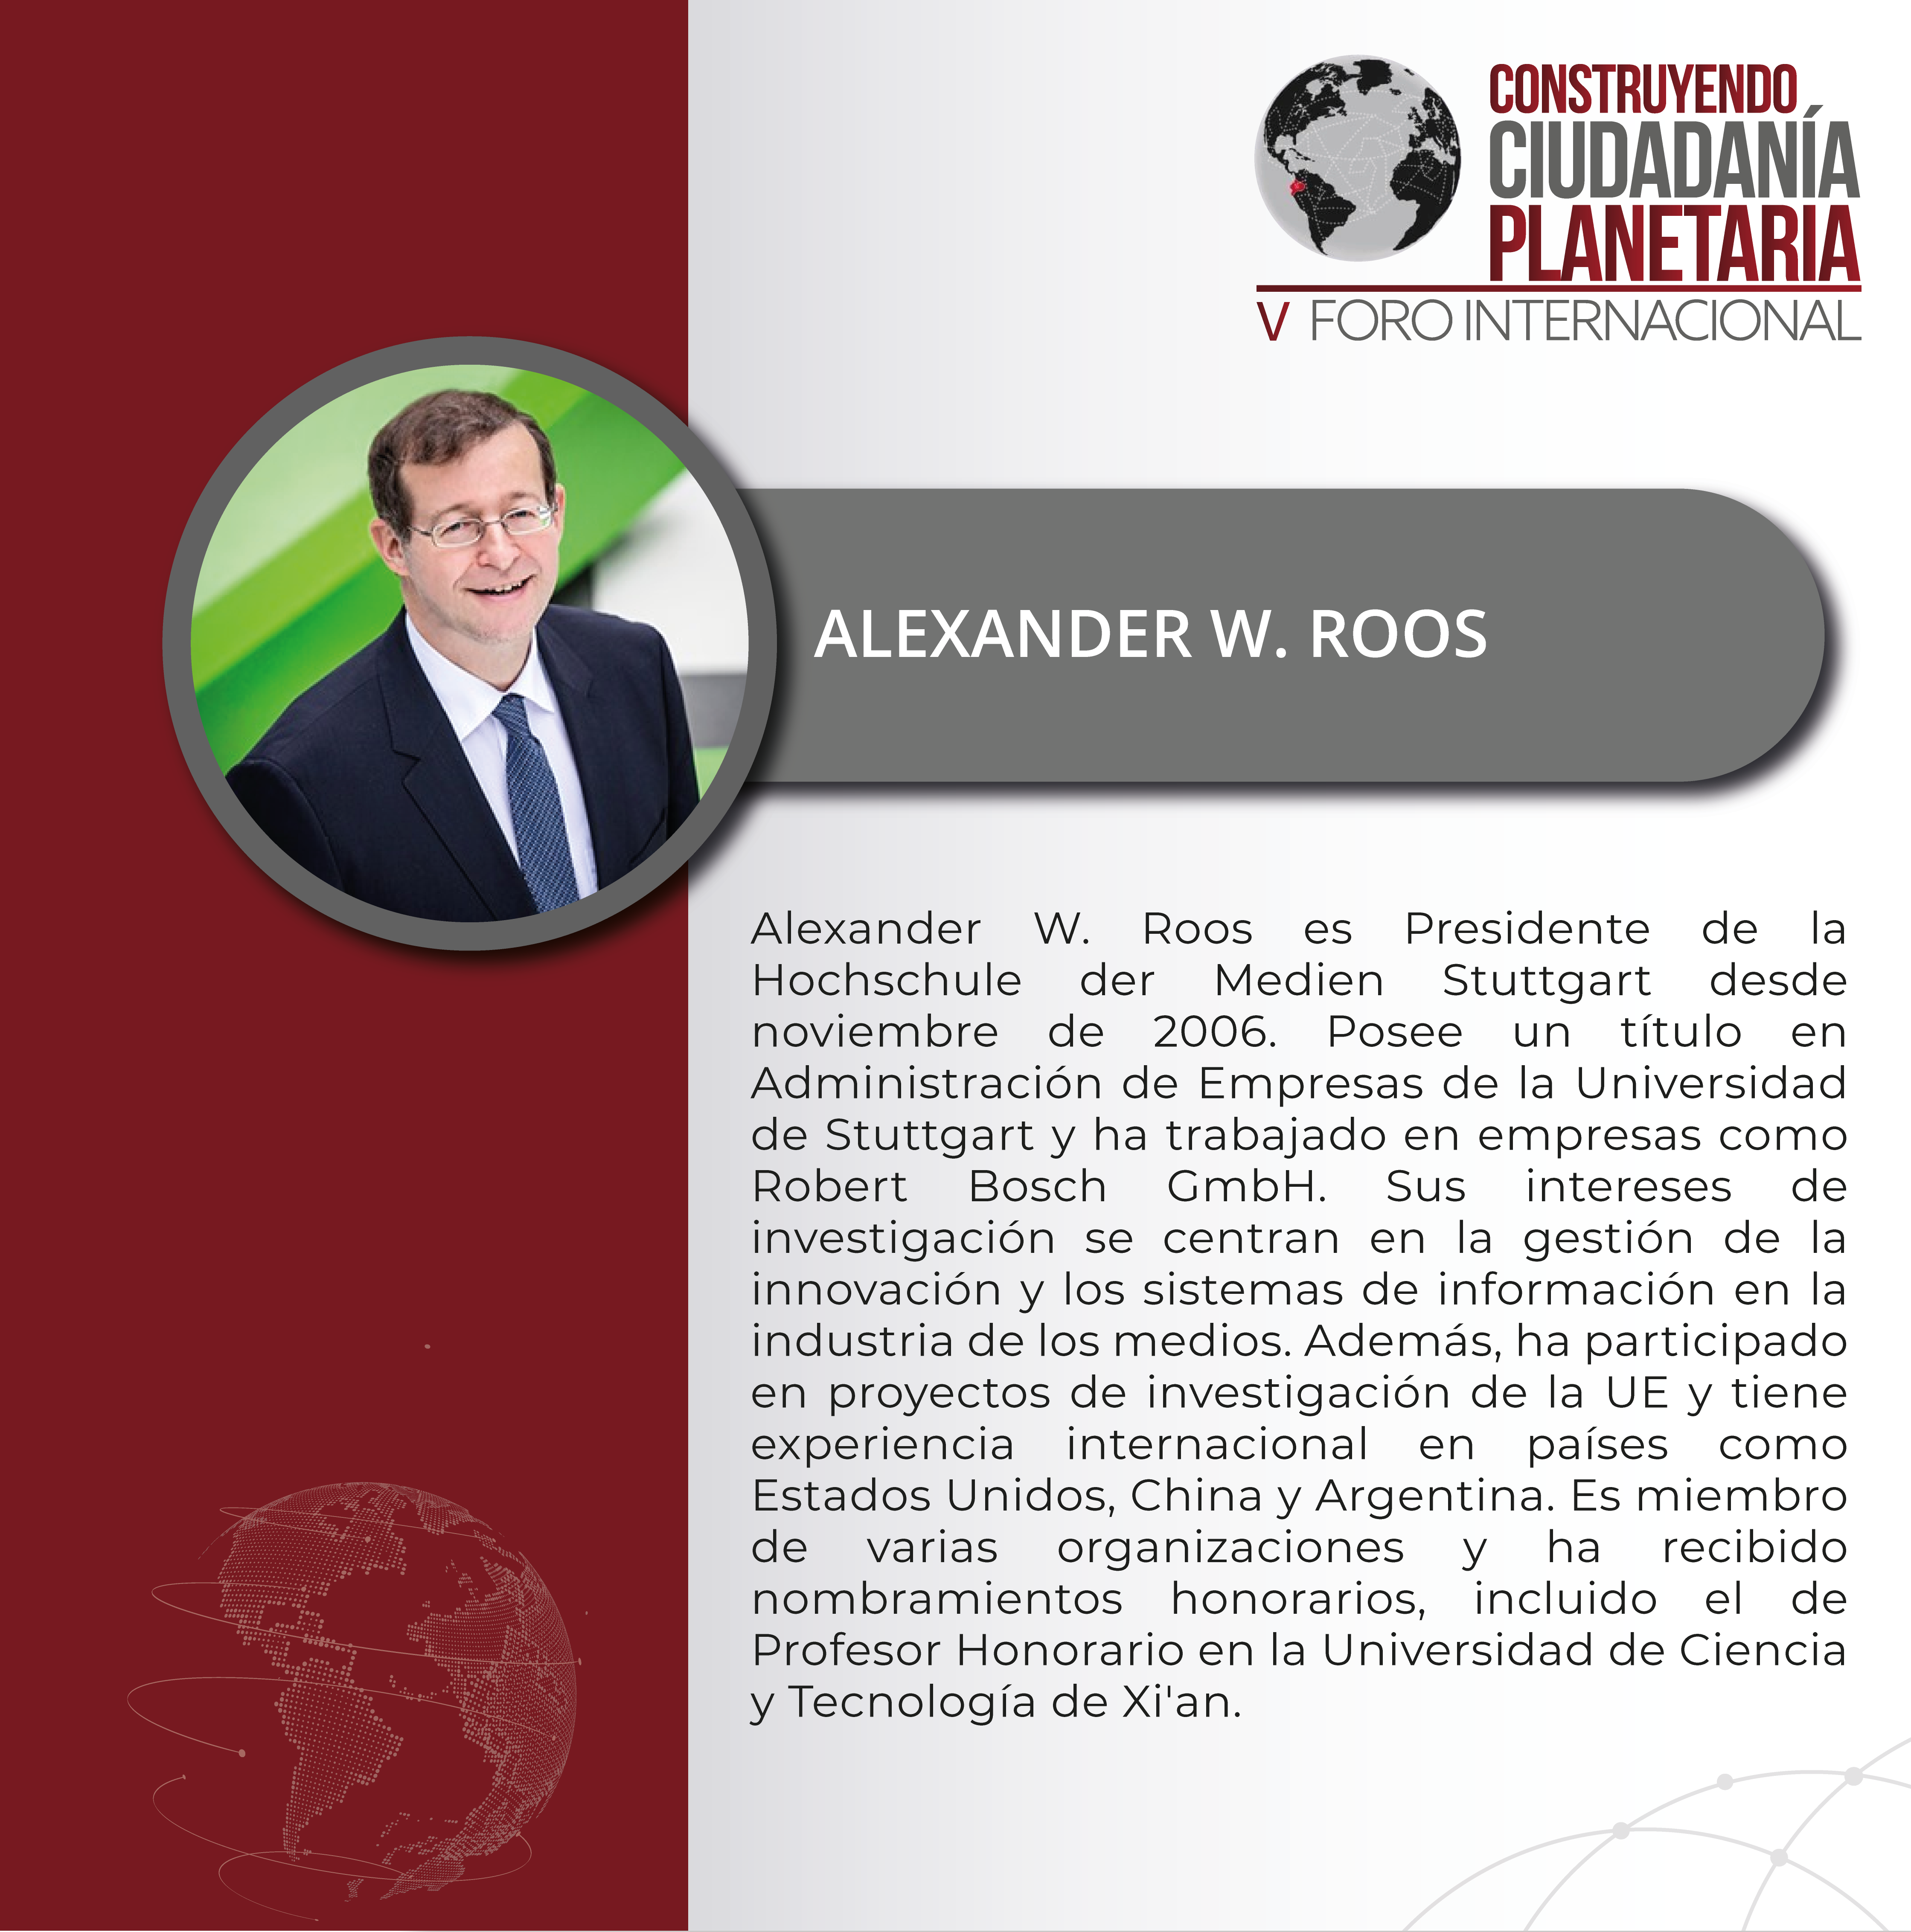 ALEXANDER W. ROOS